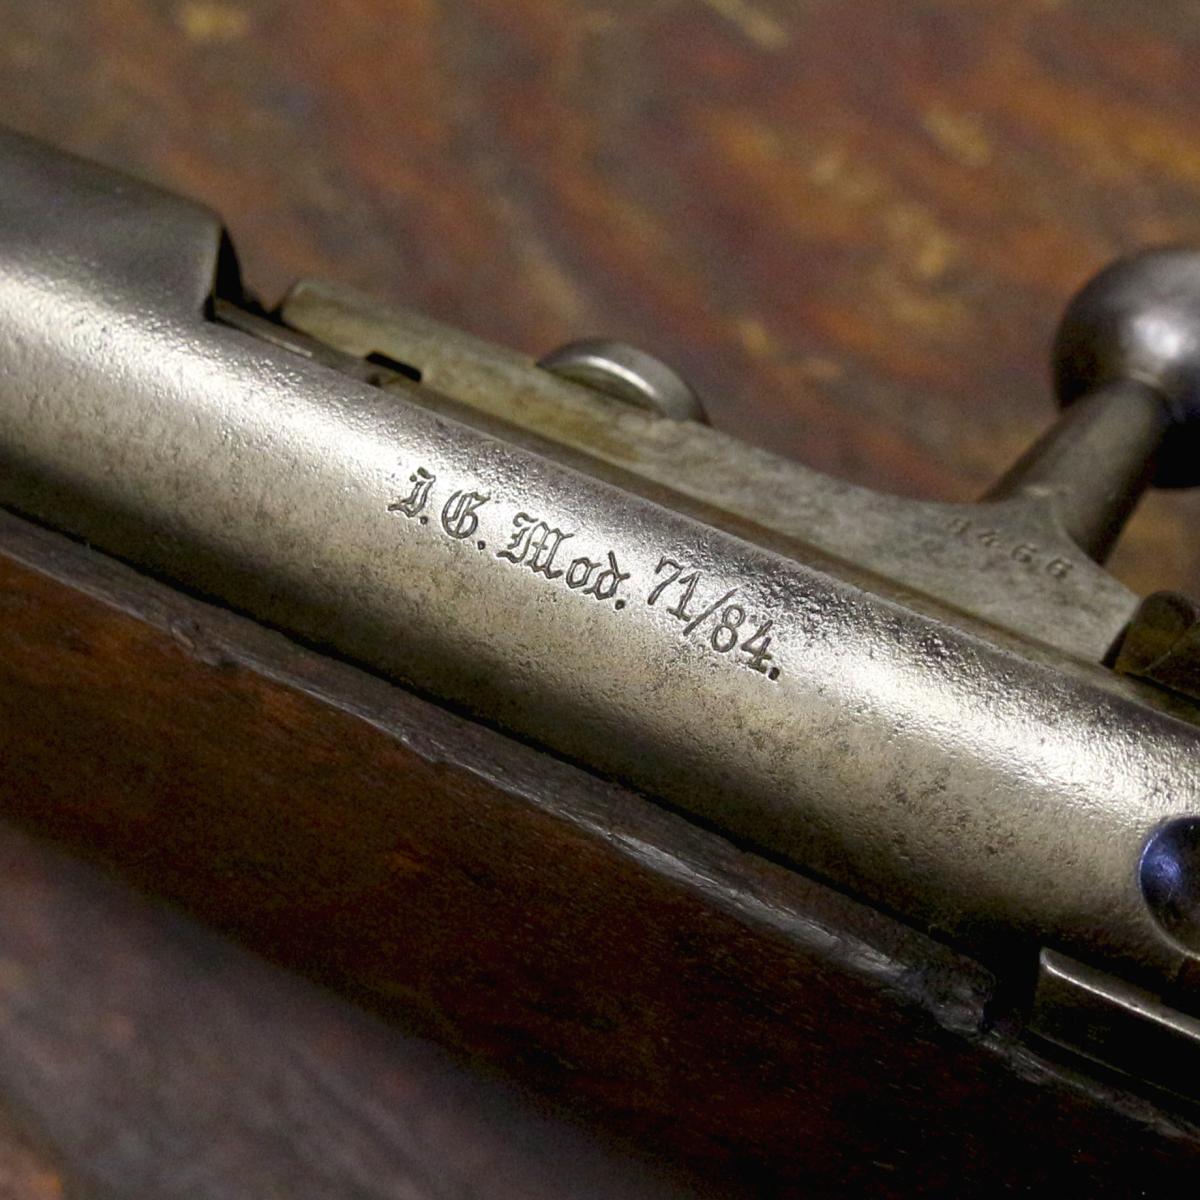 The Mauser Model 1871/84